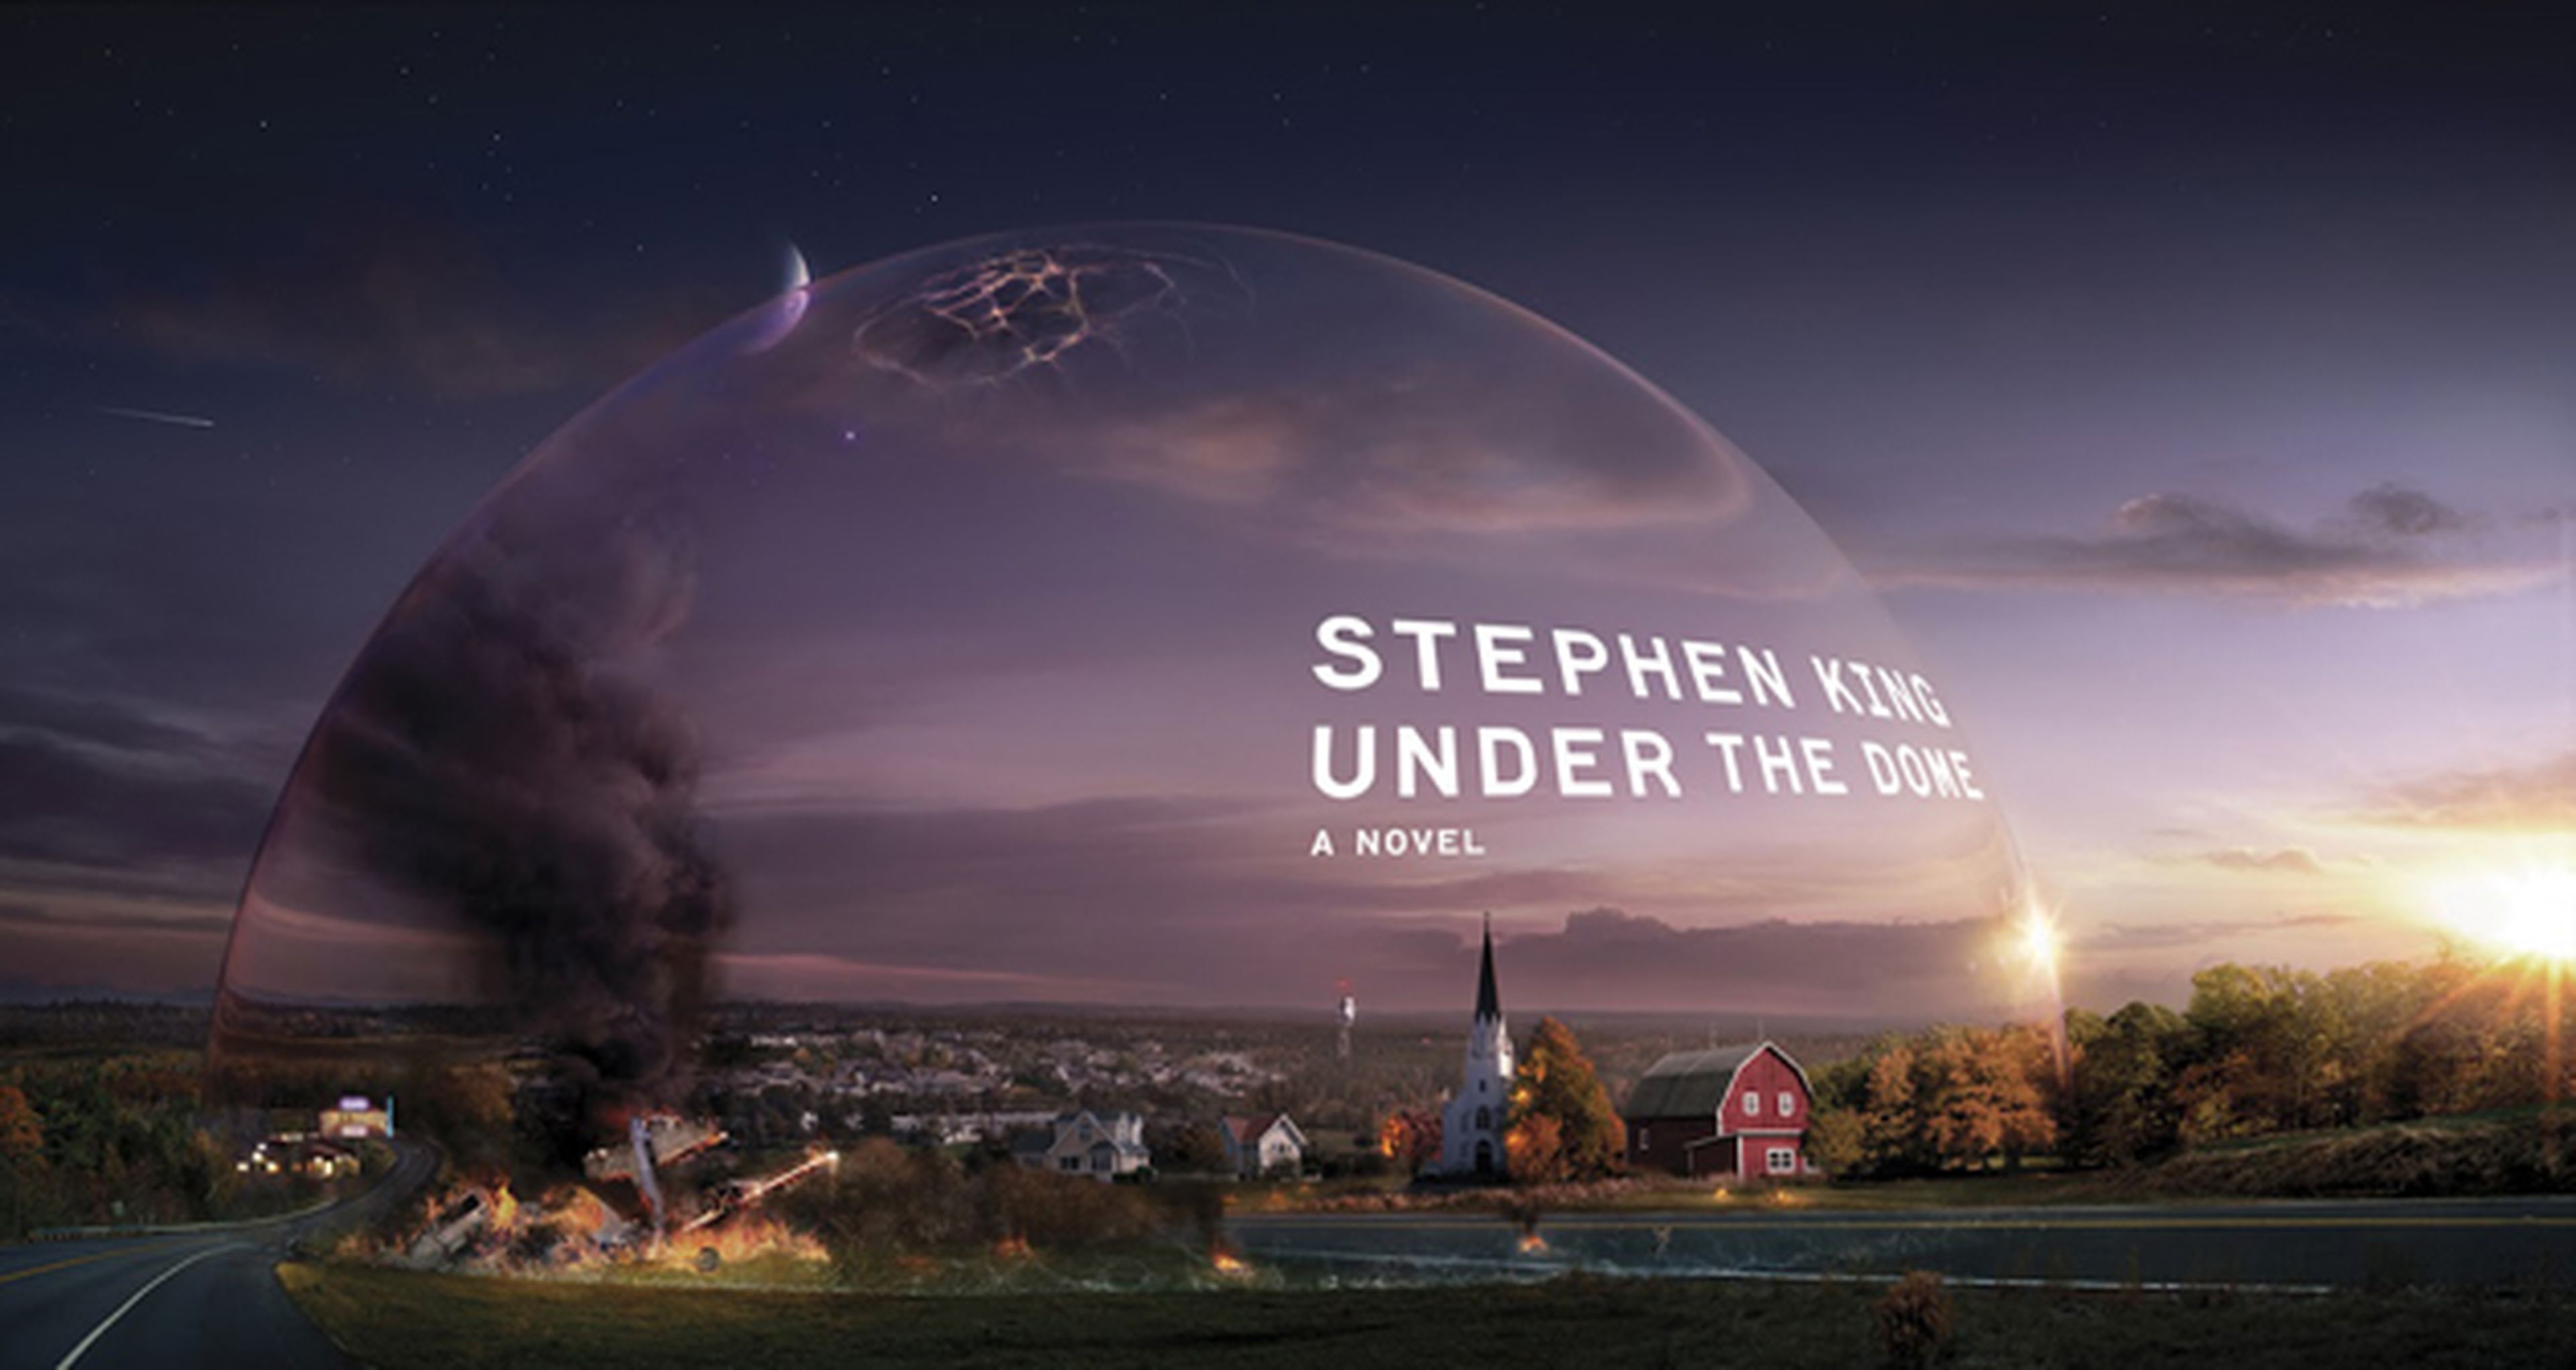 La cúpula, de Stephen King, se estrena este verano